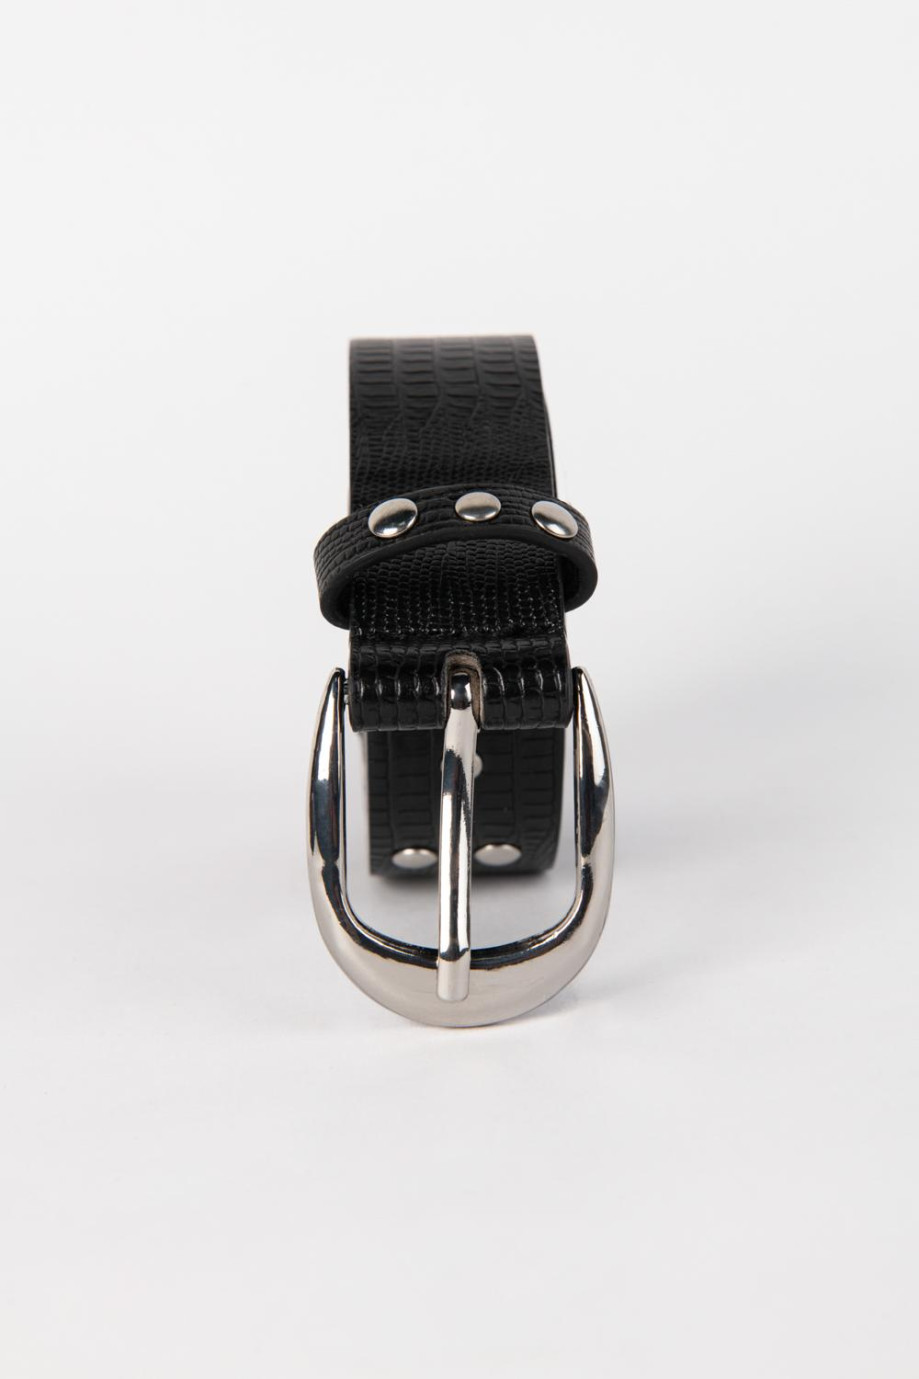 Cinturón femenino en color negro, cuenta con aplique de taches metálicos que brindan un efecto de luz y textura